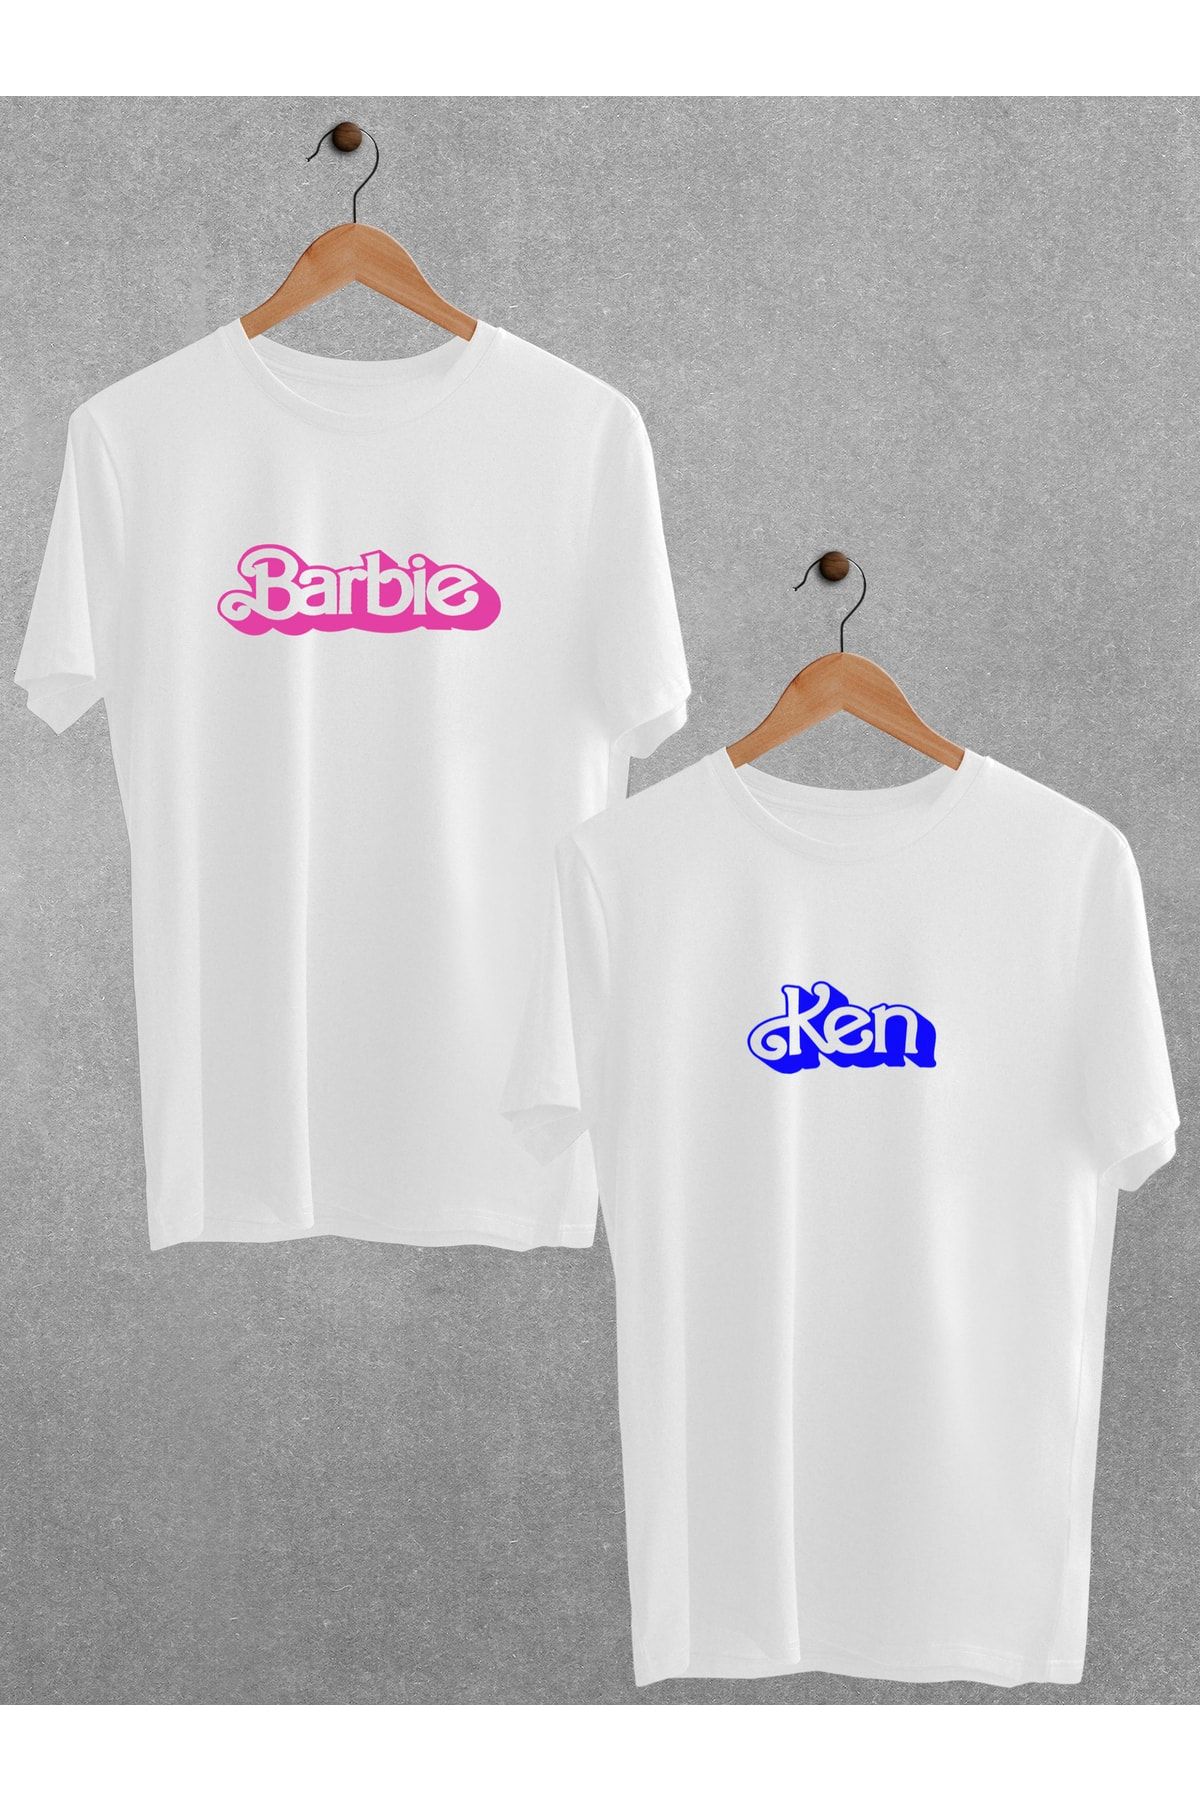 Pear Wear - Barbie Ken Baskılı Çift Tişört Beyaz Oversize Sevgili T-shirt